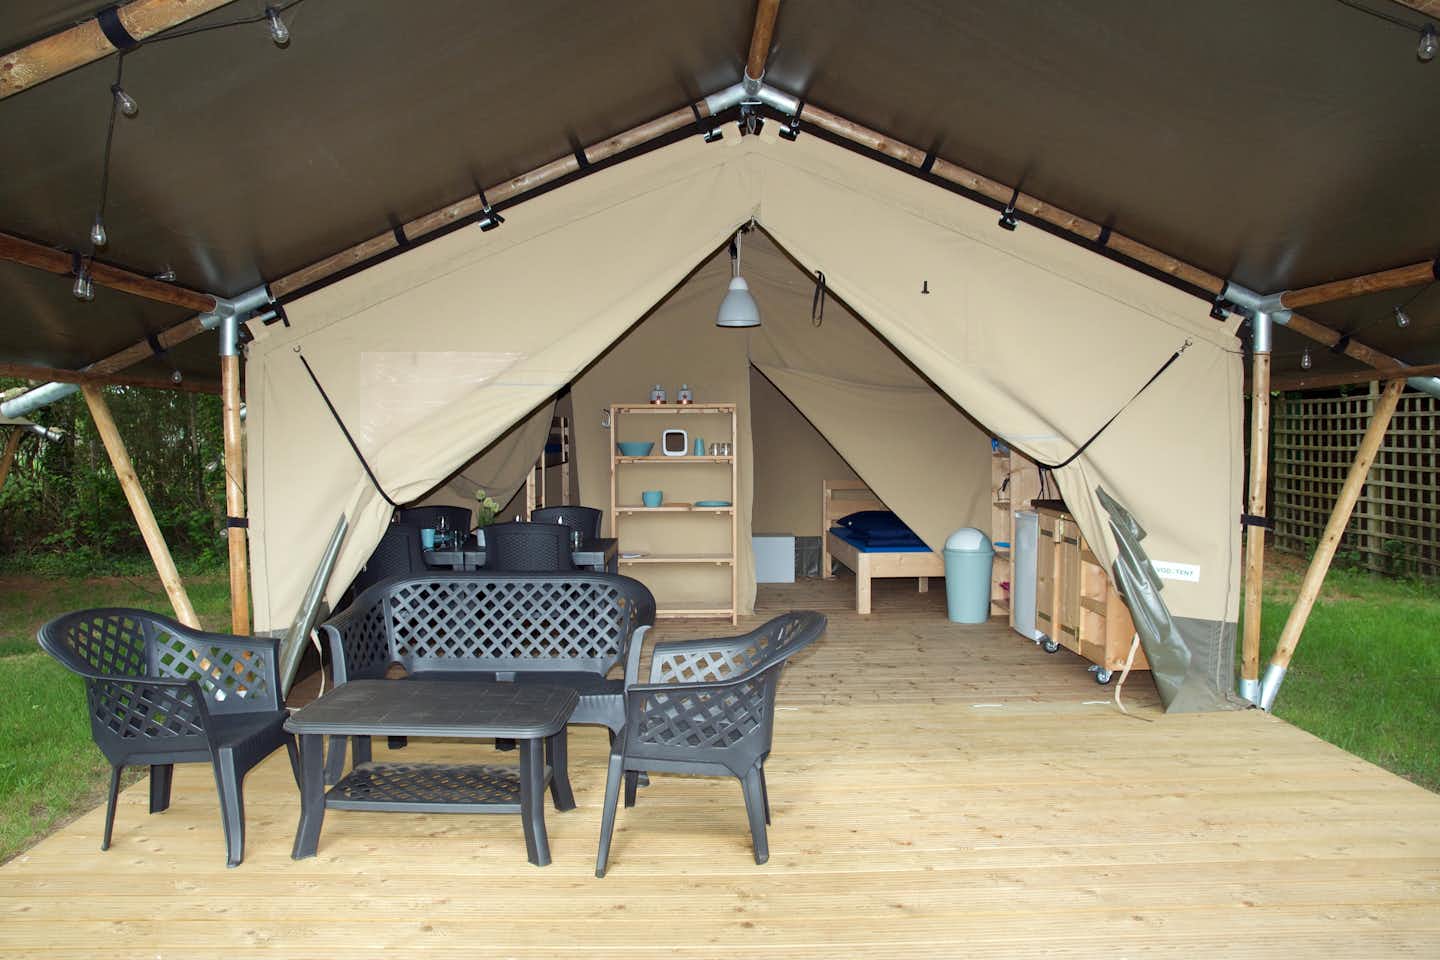 Vodatent @ Camping Troisvierges  Vodatent @ Camping Troivierges - Mietunterkunft mit überdachter Terrasse